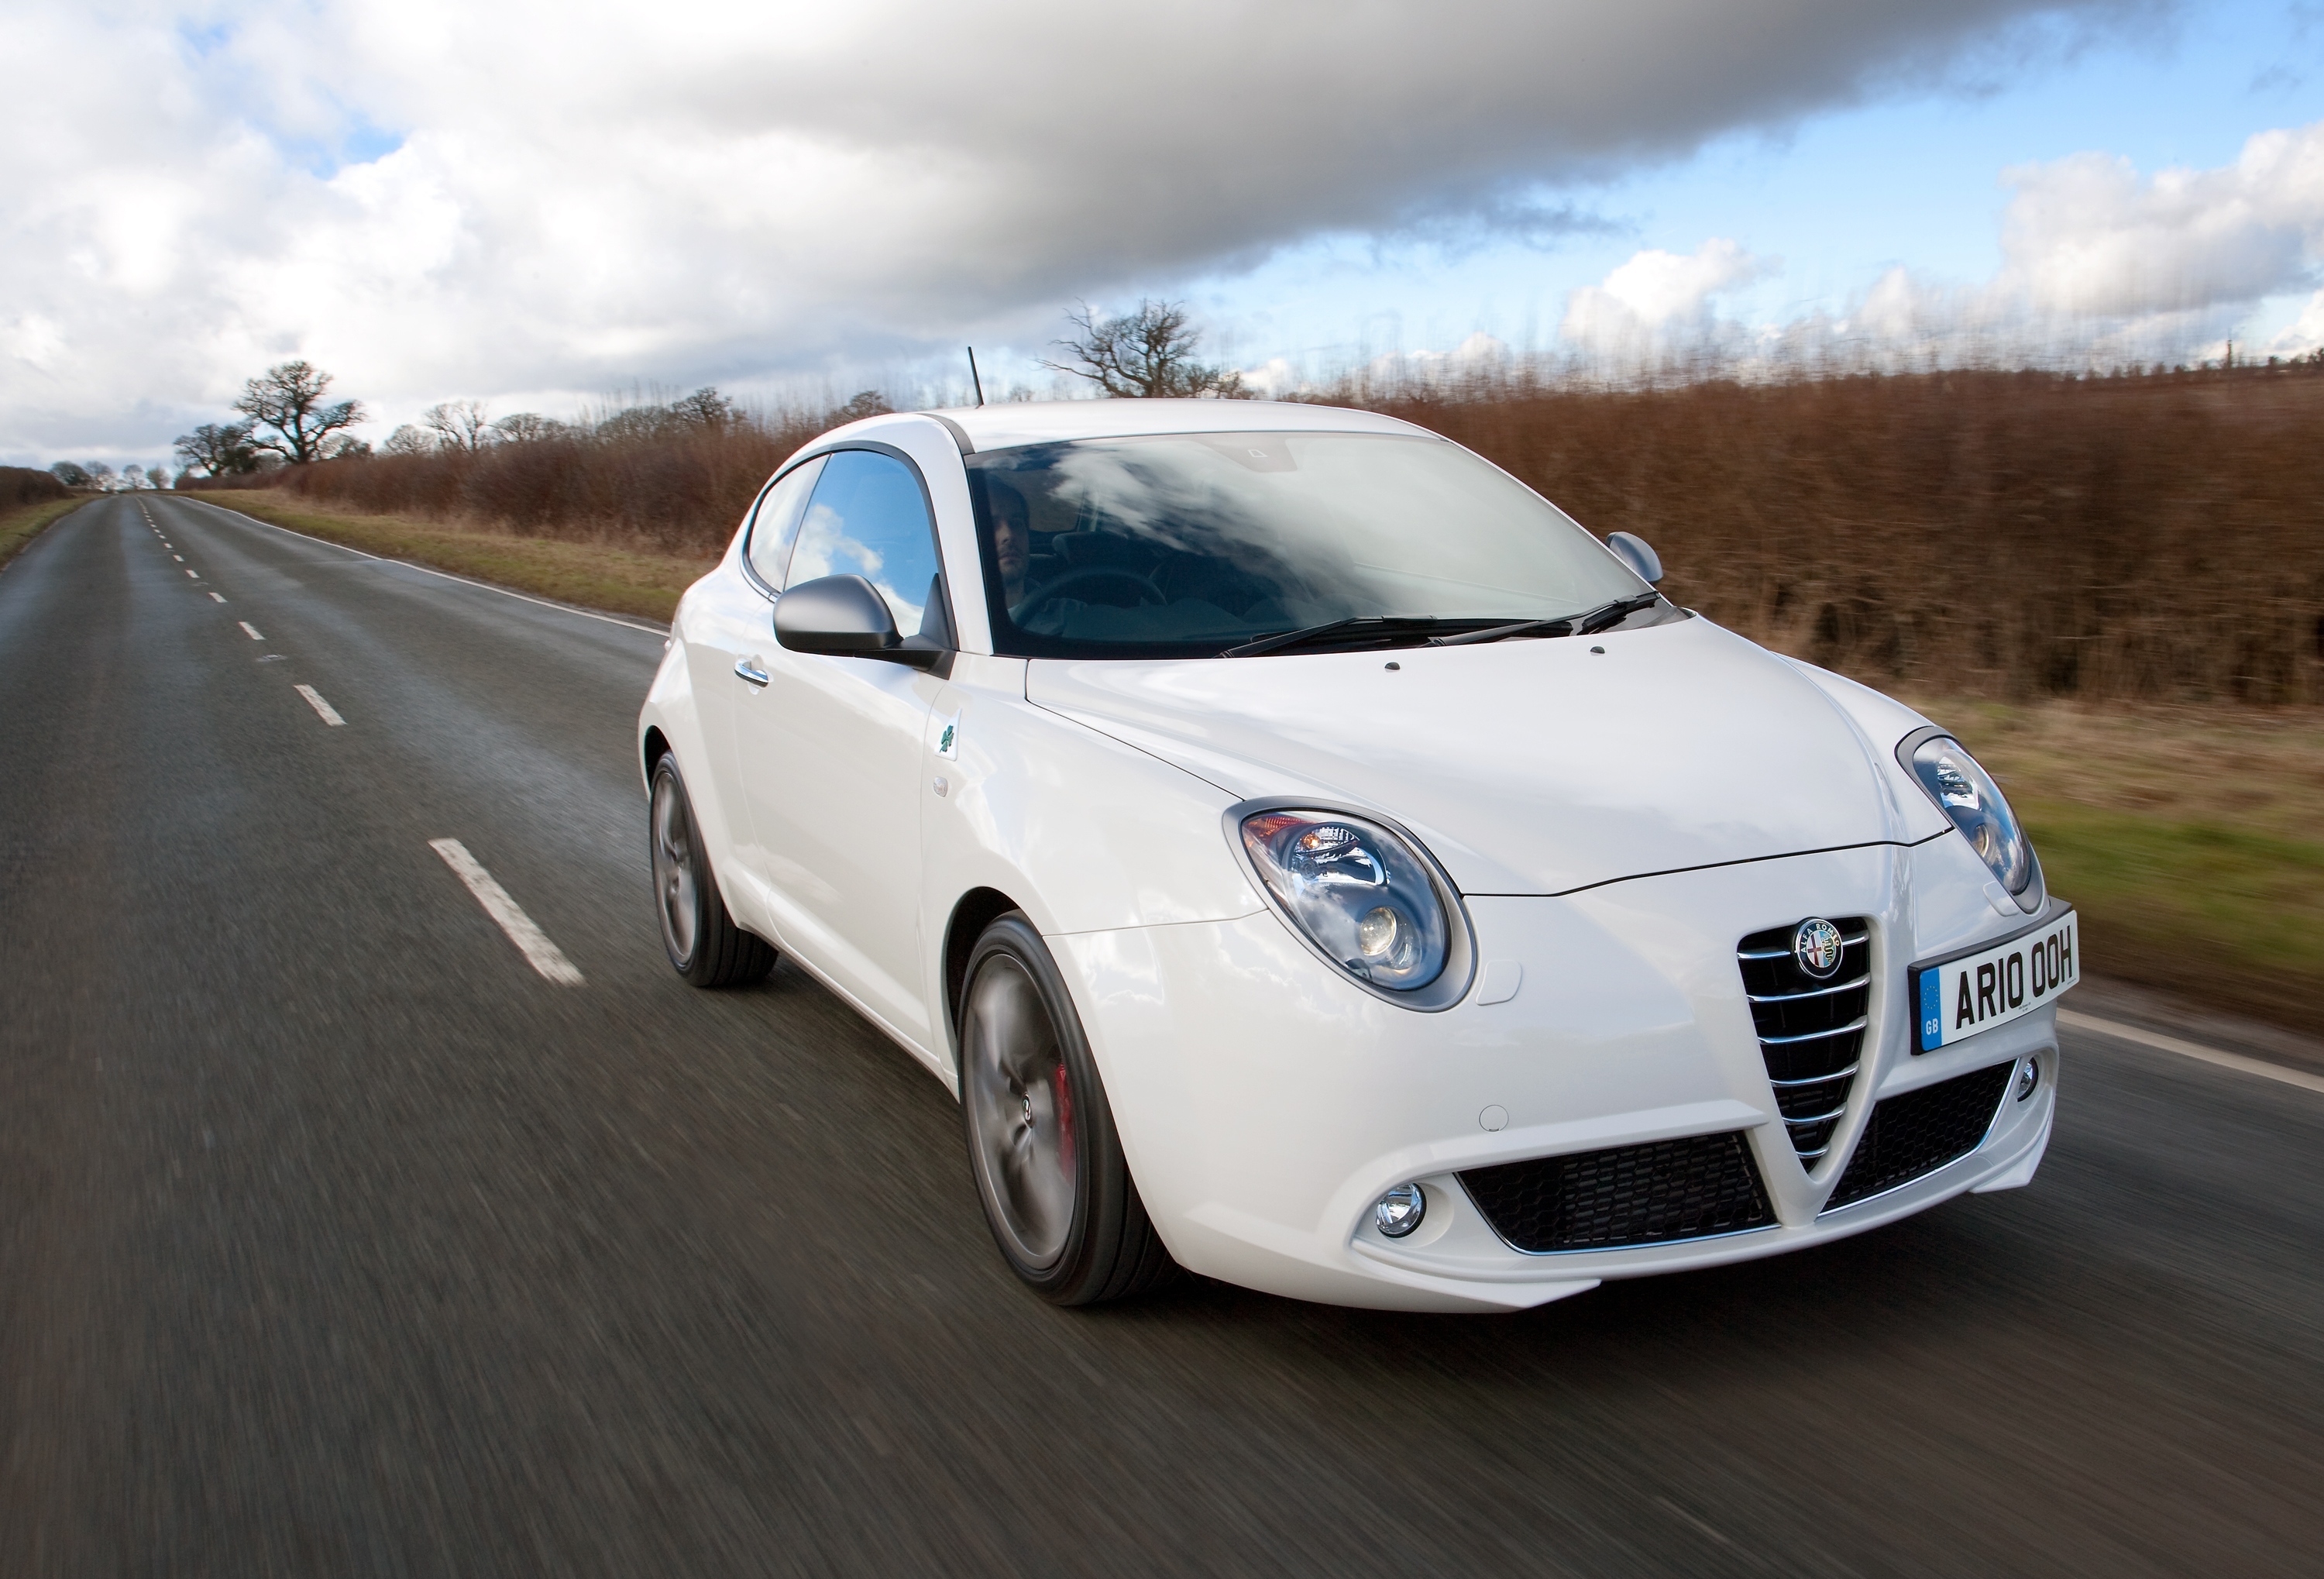 2013 Alfa Romeo MiTO DiSTInctive: owner review - Drive